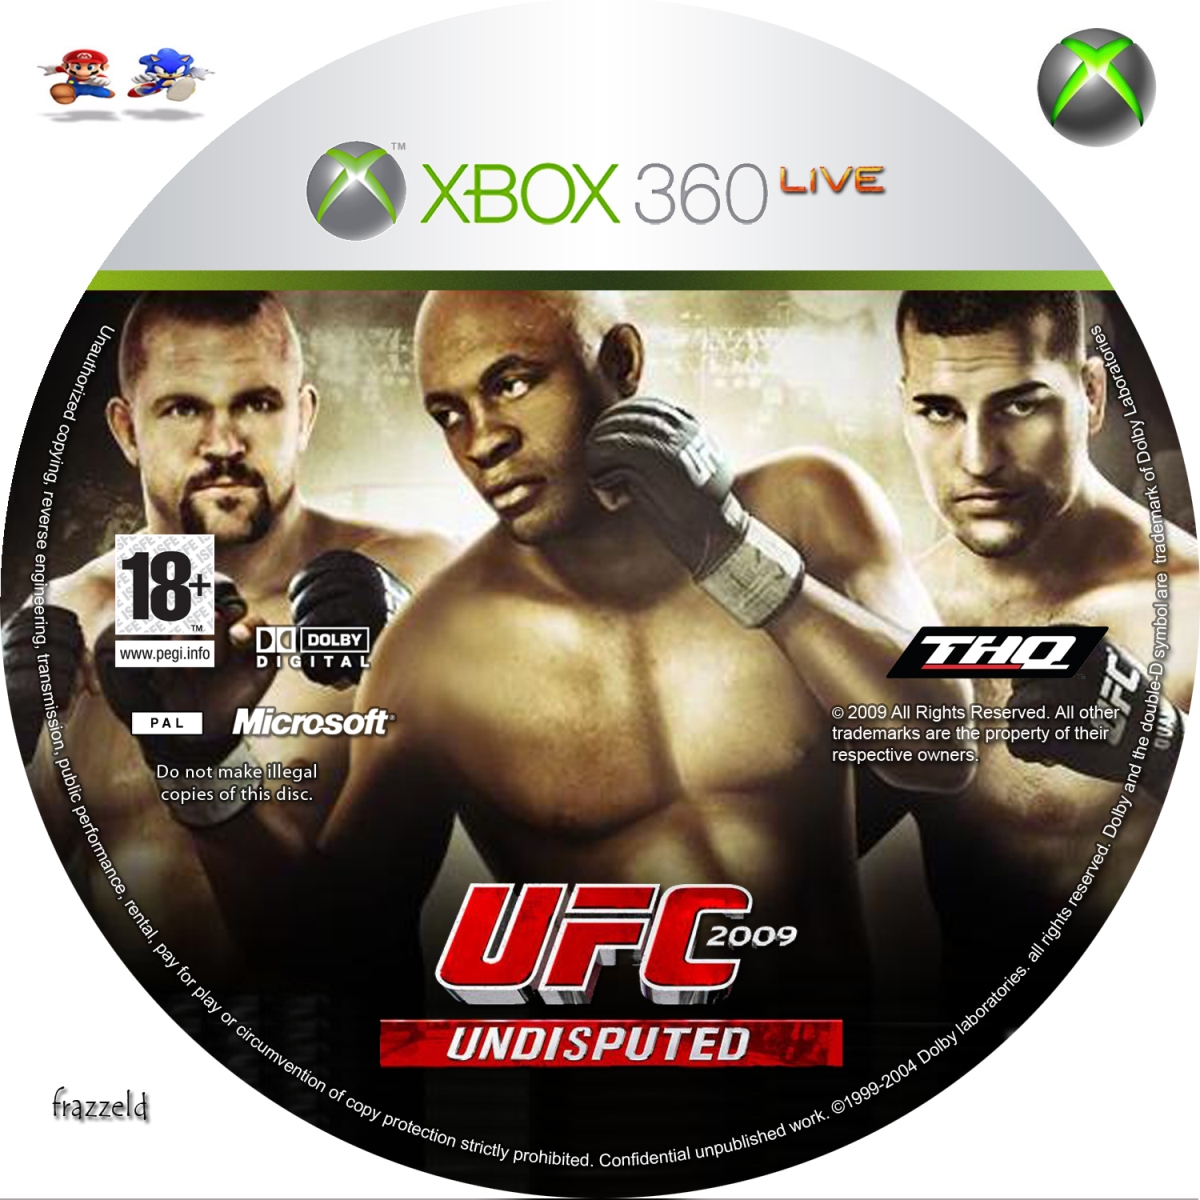 Игры для прошитого xbox 360. UFC 2009 Undisputed Xbox 360. UFC 3 Undisputed Xbox 360 диск. Обложка УФС 3 Xbox 360. Диск для Xbox 360 UFC 2.